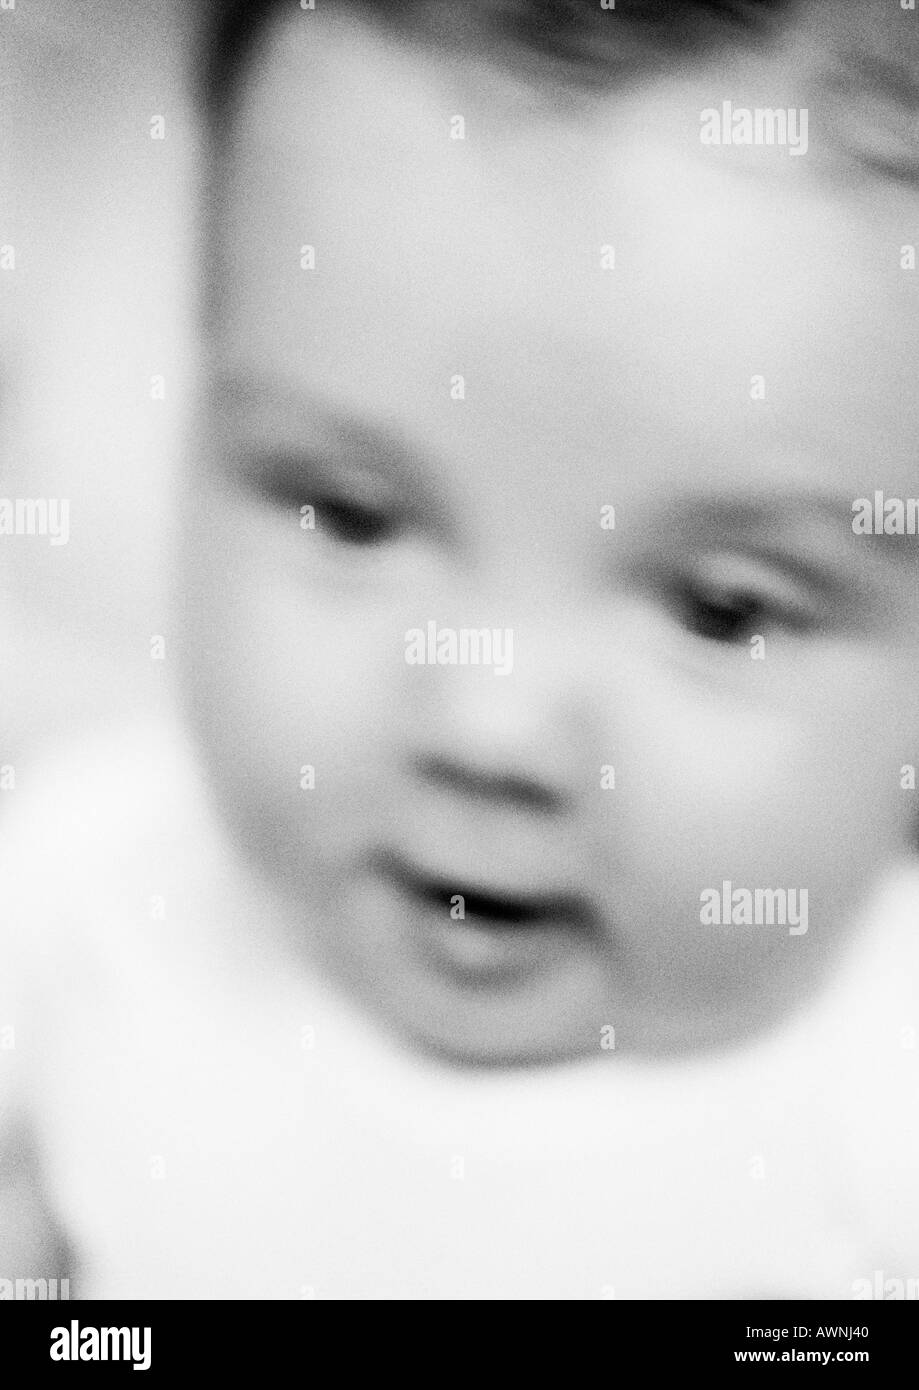 Bébé à la recherche vers le bas, brouillées, close-up, b&w Banque D'Images